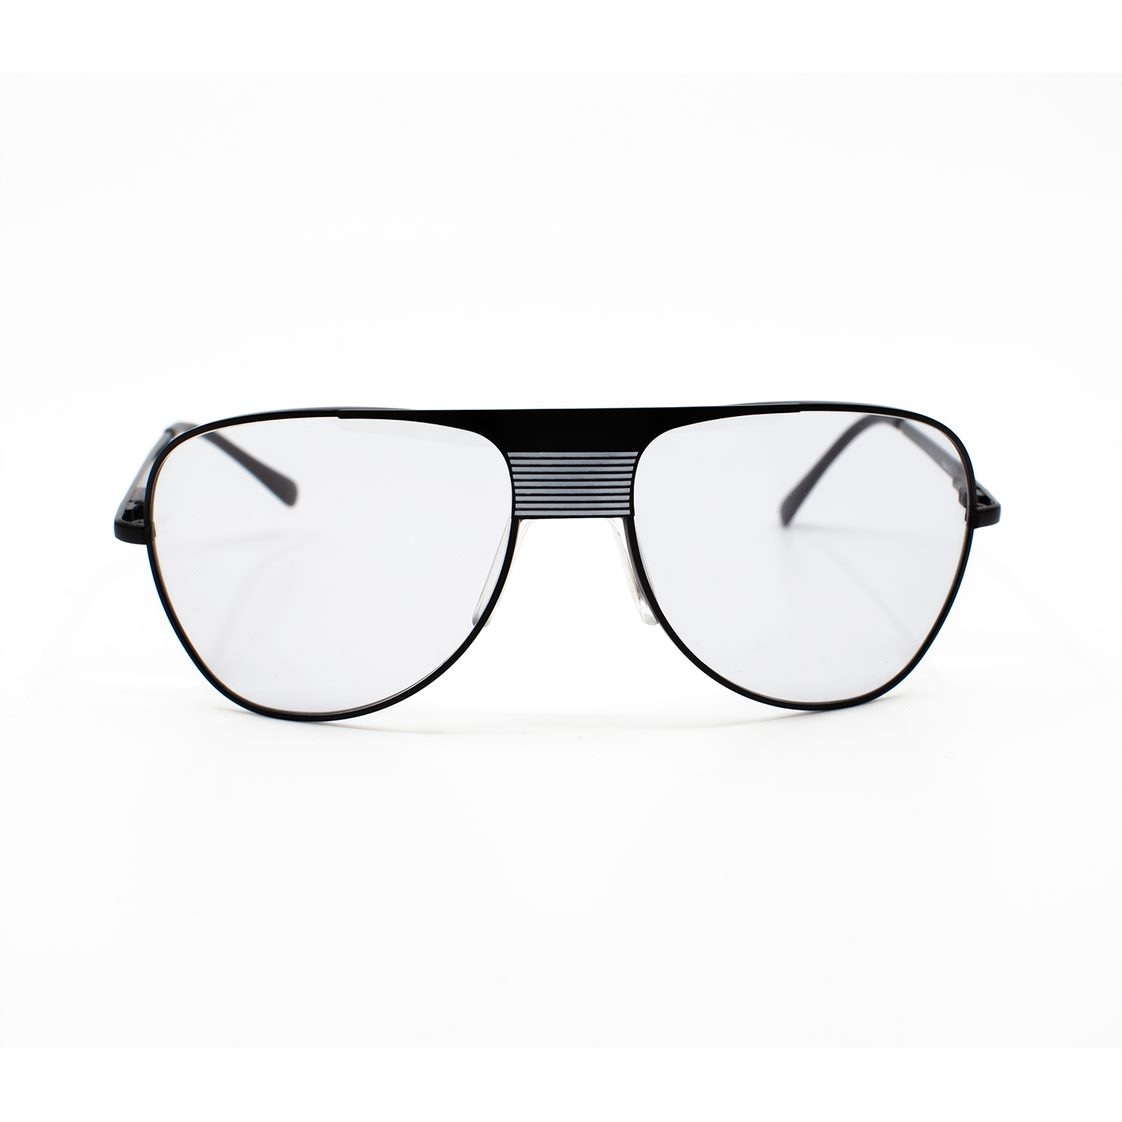 UK Trotting Glasses, Nova 3 model